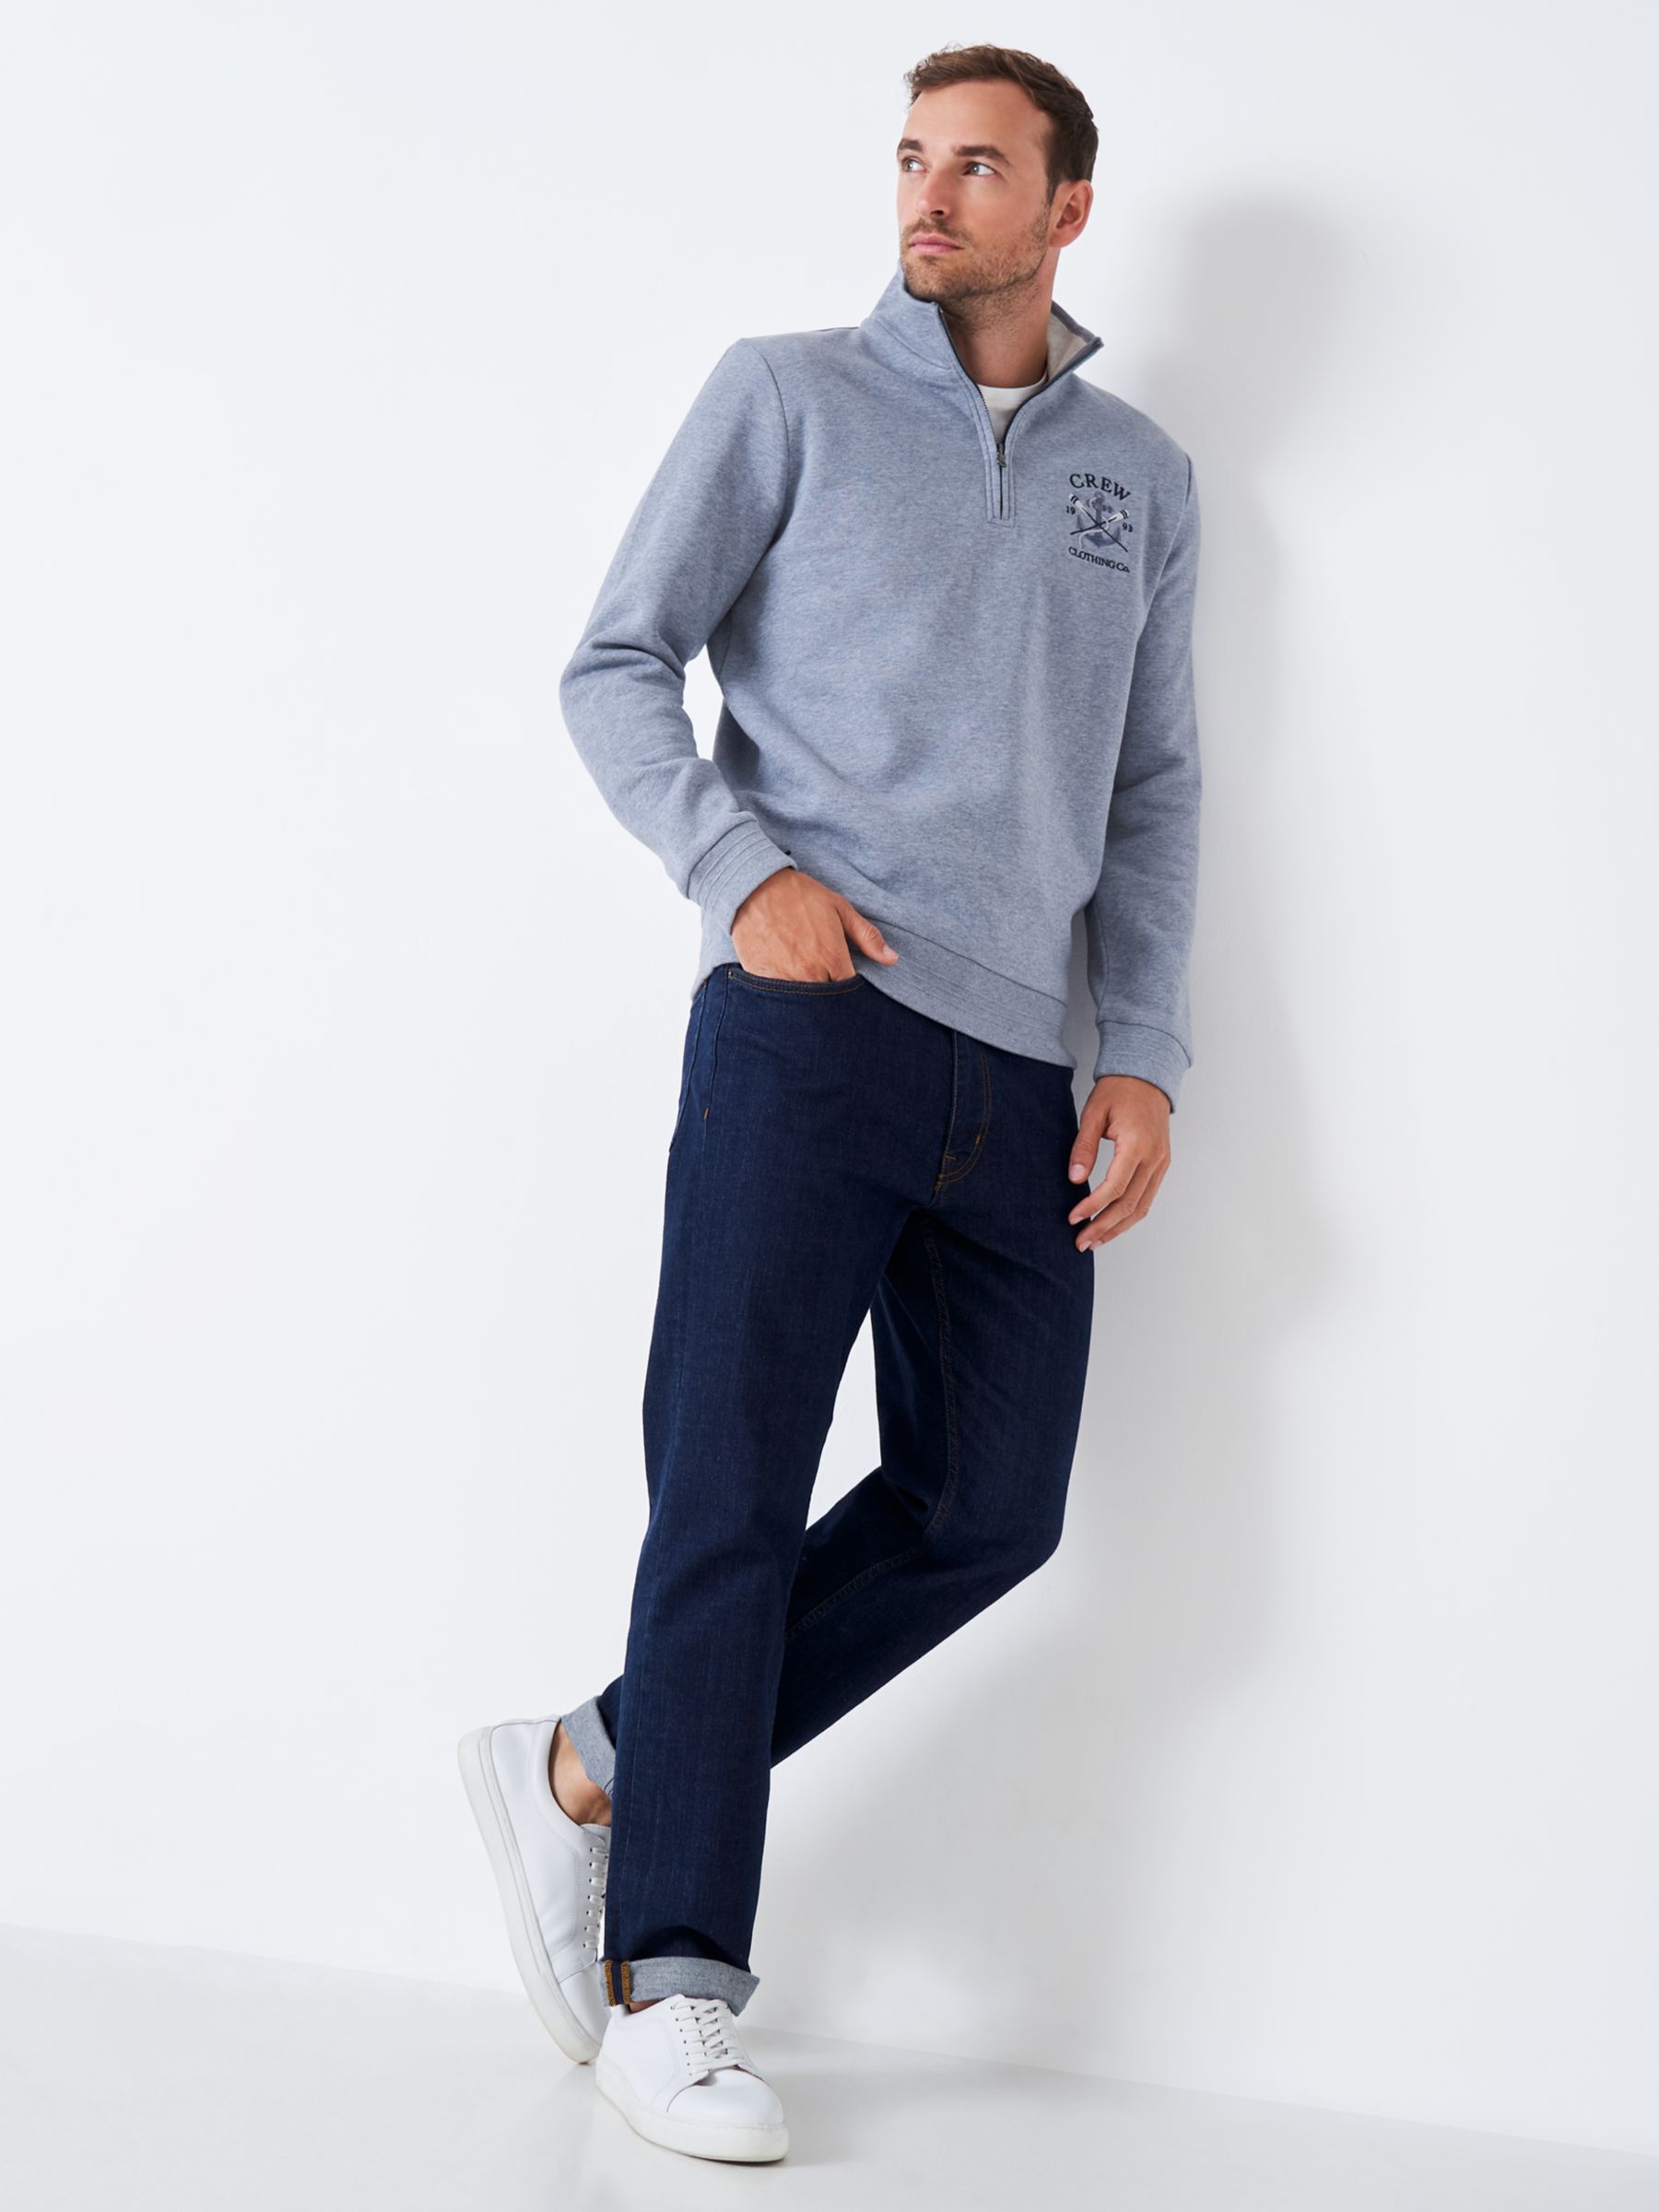 Men's Graphic Half Zip Sweatshirt from Crew Clothing Company